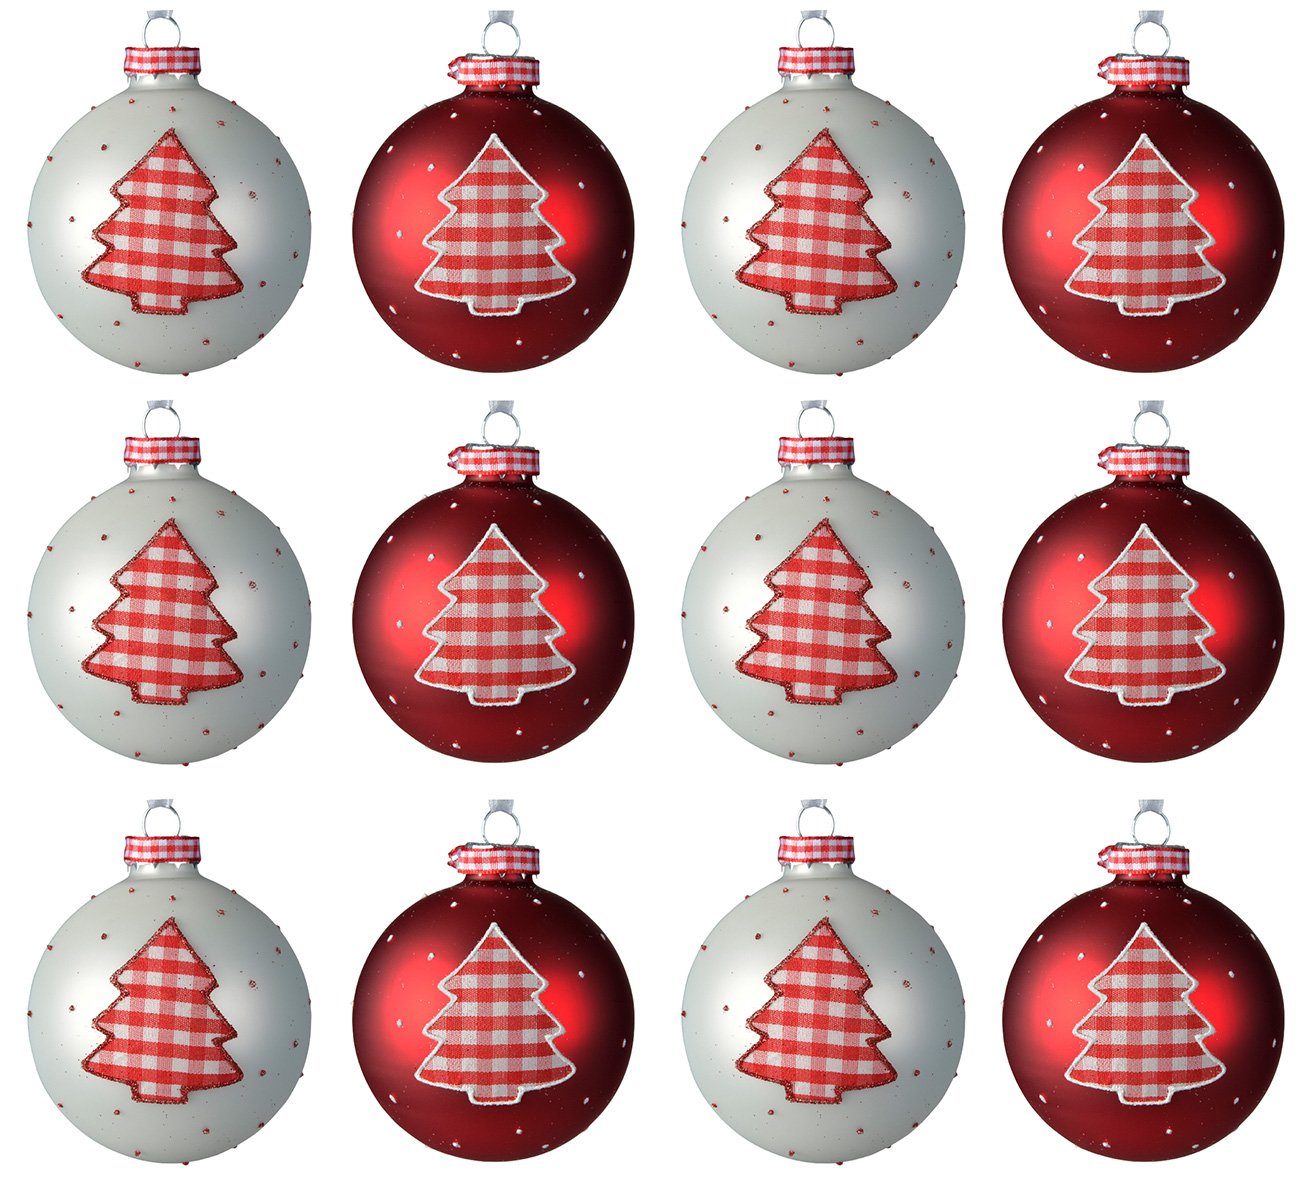 Decoris season decorations Weihnachtsbaumkugel, Weihnachtskugeln Glas 8cm mit Tannenbaum Motiv 12er Set rot / weiß